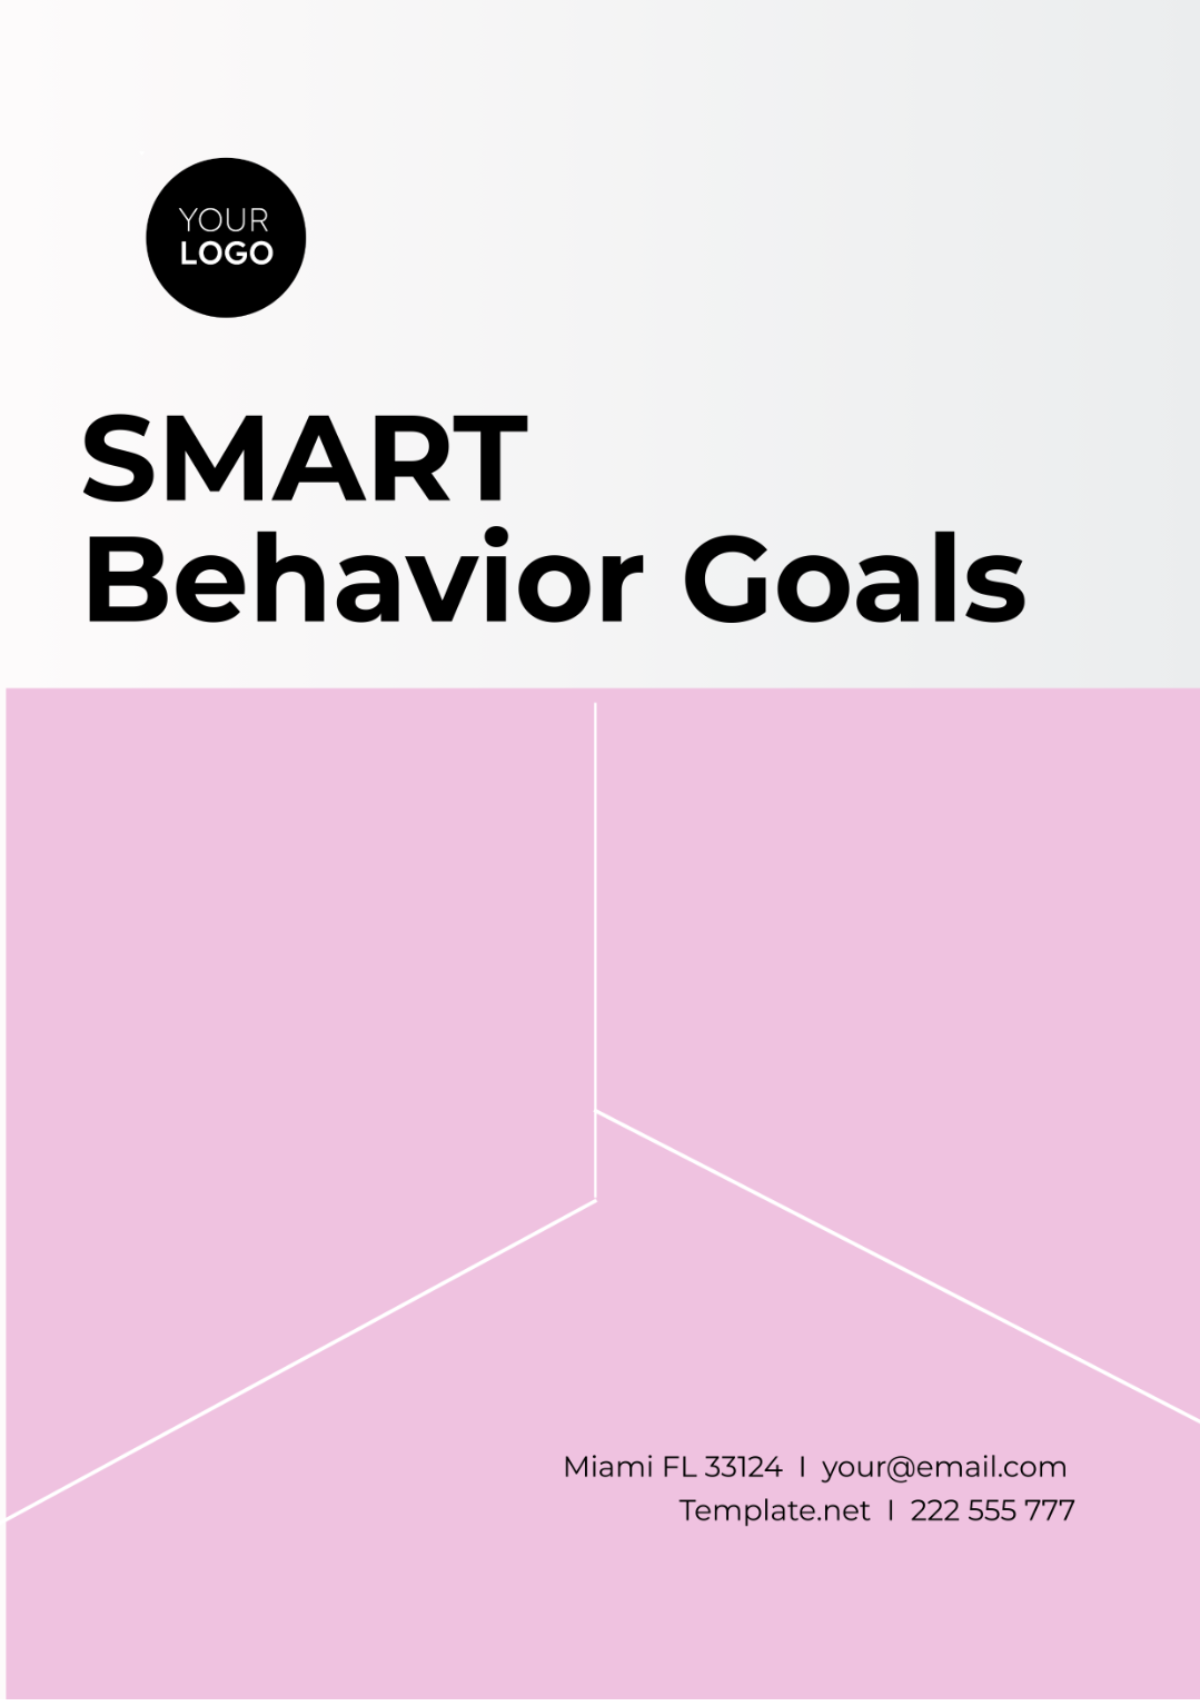 SMART Behavior Goals Template